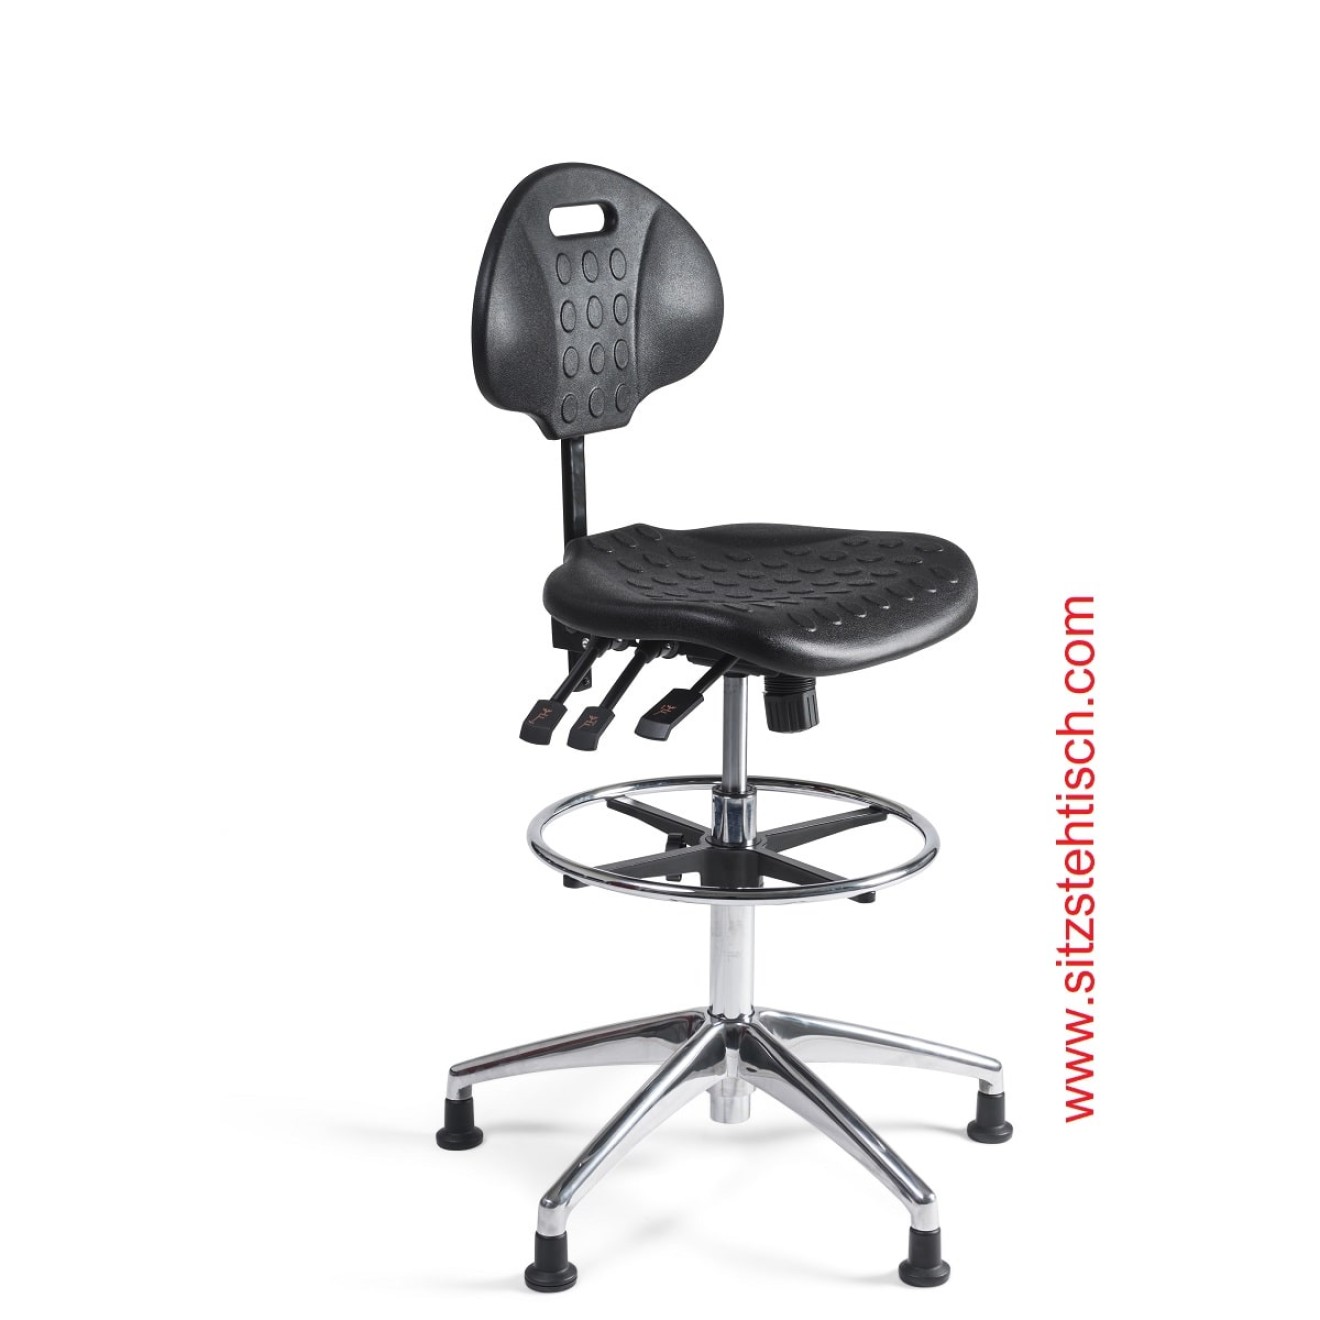 Arbeitsstuhl hoch - Rücken- und Sitzwinkelverstellung - Sitz- und Rücken aus PU Schaum schwarz - Fußkreuz Aluminium mit Gleiter - 5 Jahre Garantie -100344